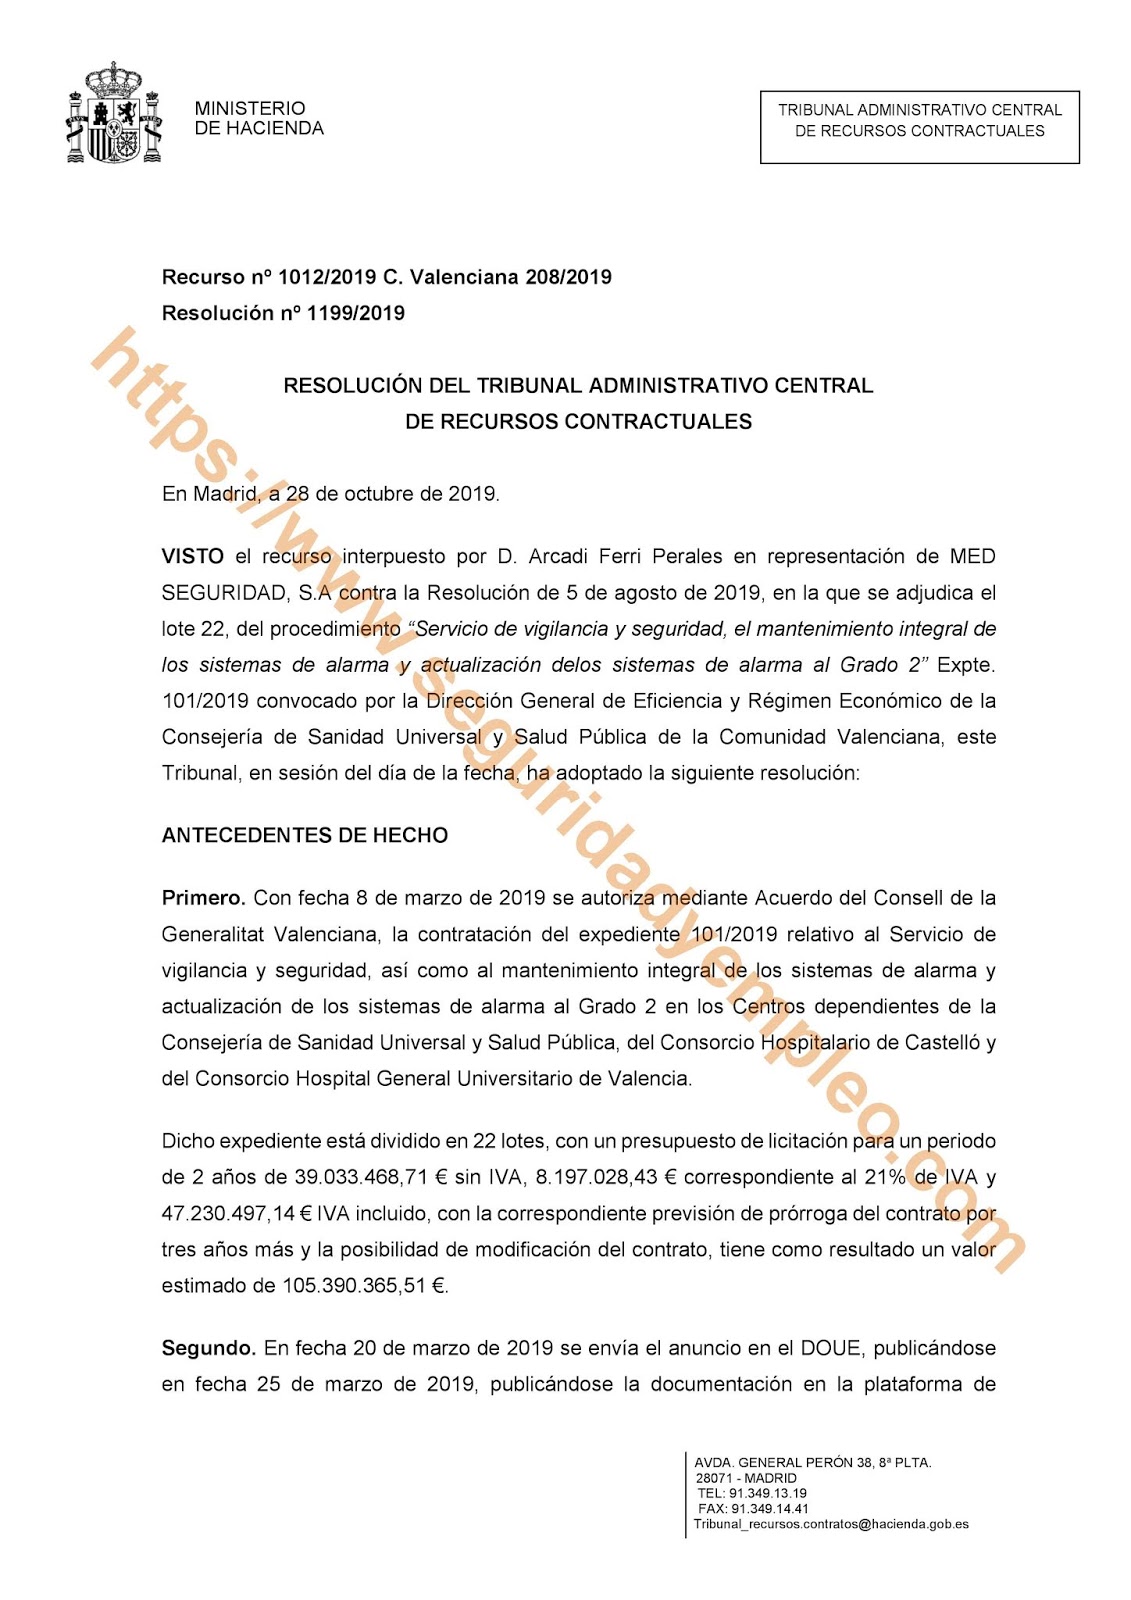 Resolución del tribunal de arbitraje sobre el lote 22 de sanidad de la Consejería de sanidad de Valencia. (Hospital general)